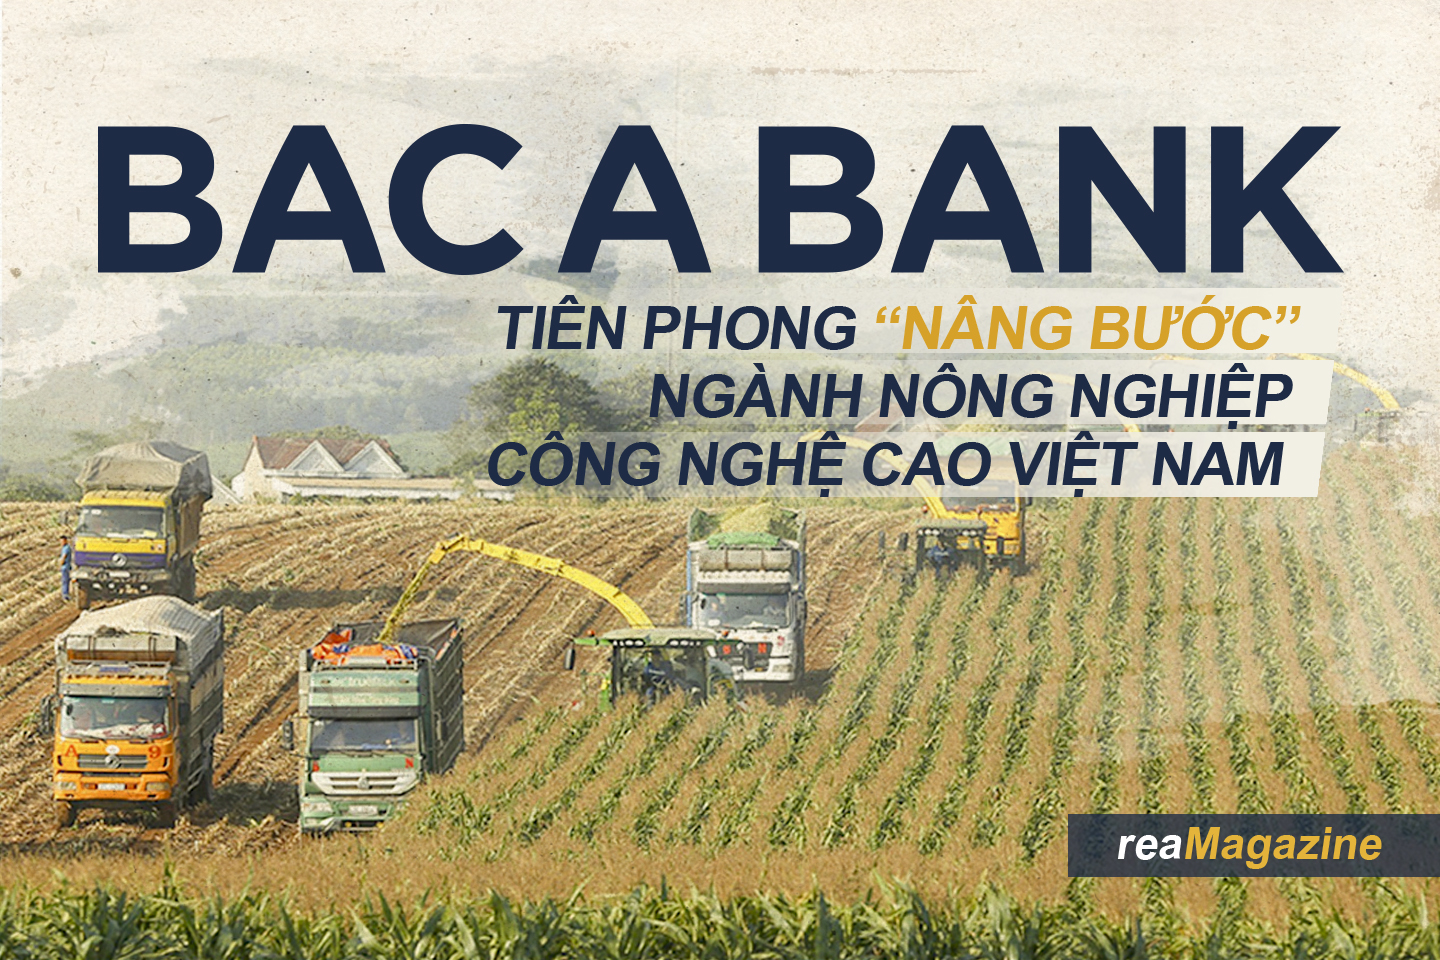 BAC A BANK tiên phong “nâng bước” ngành nông nghiệp công nghệ cao Việt Nam